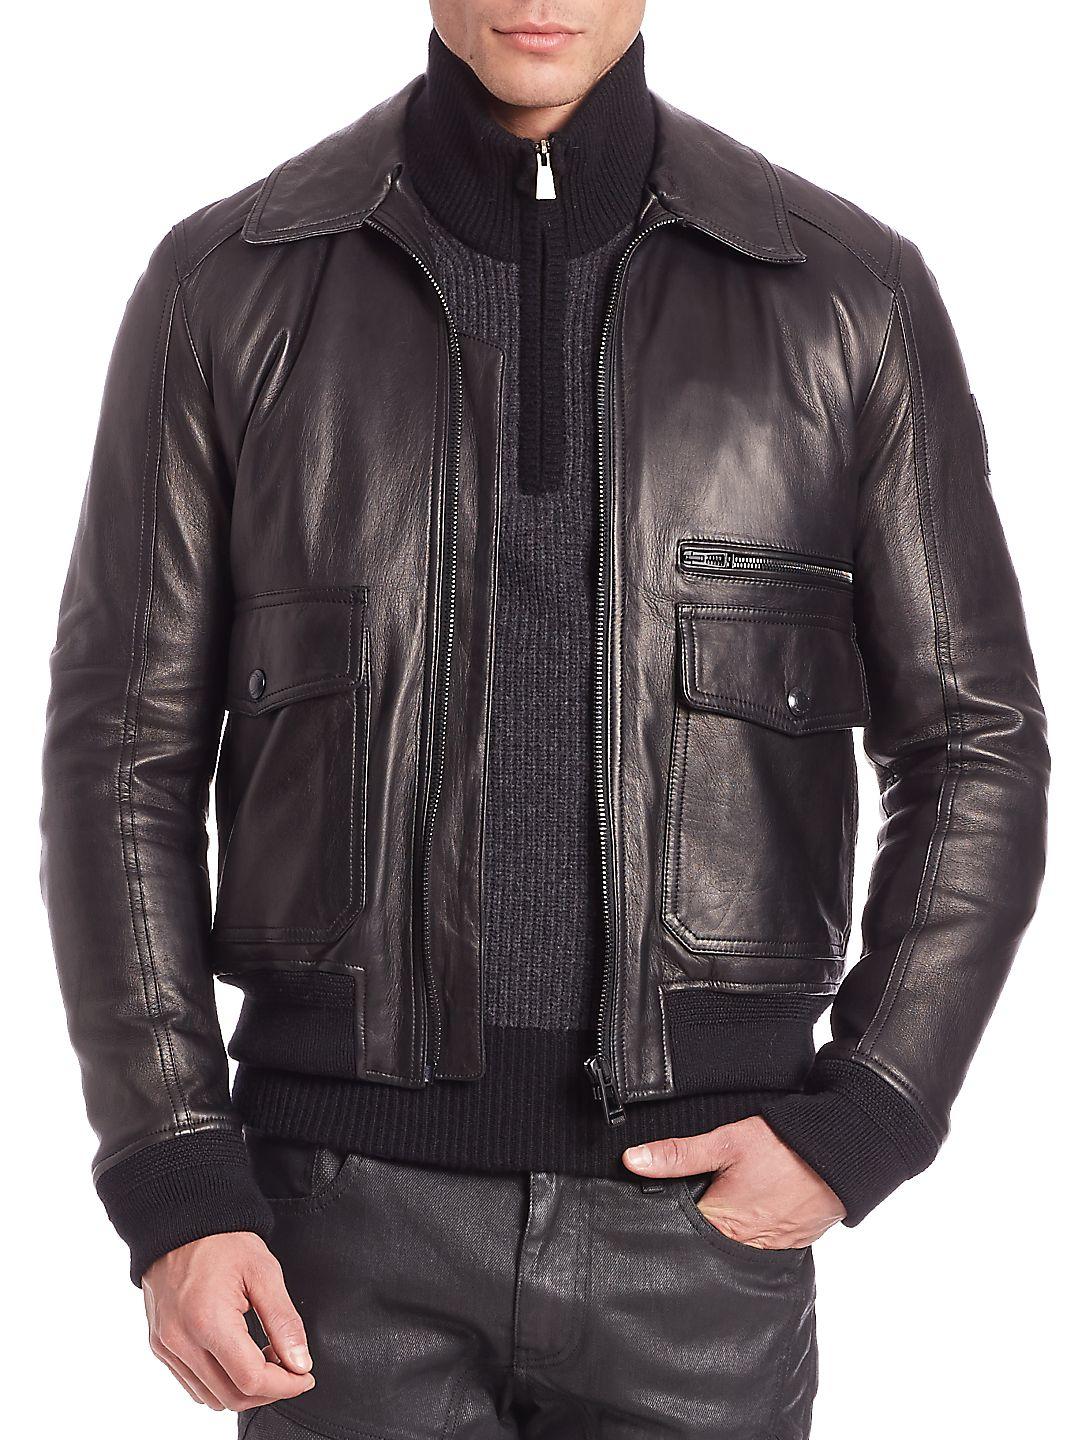 Belstaff Hallington Leather Bomber Jacket in Black for Men - Lyst